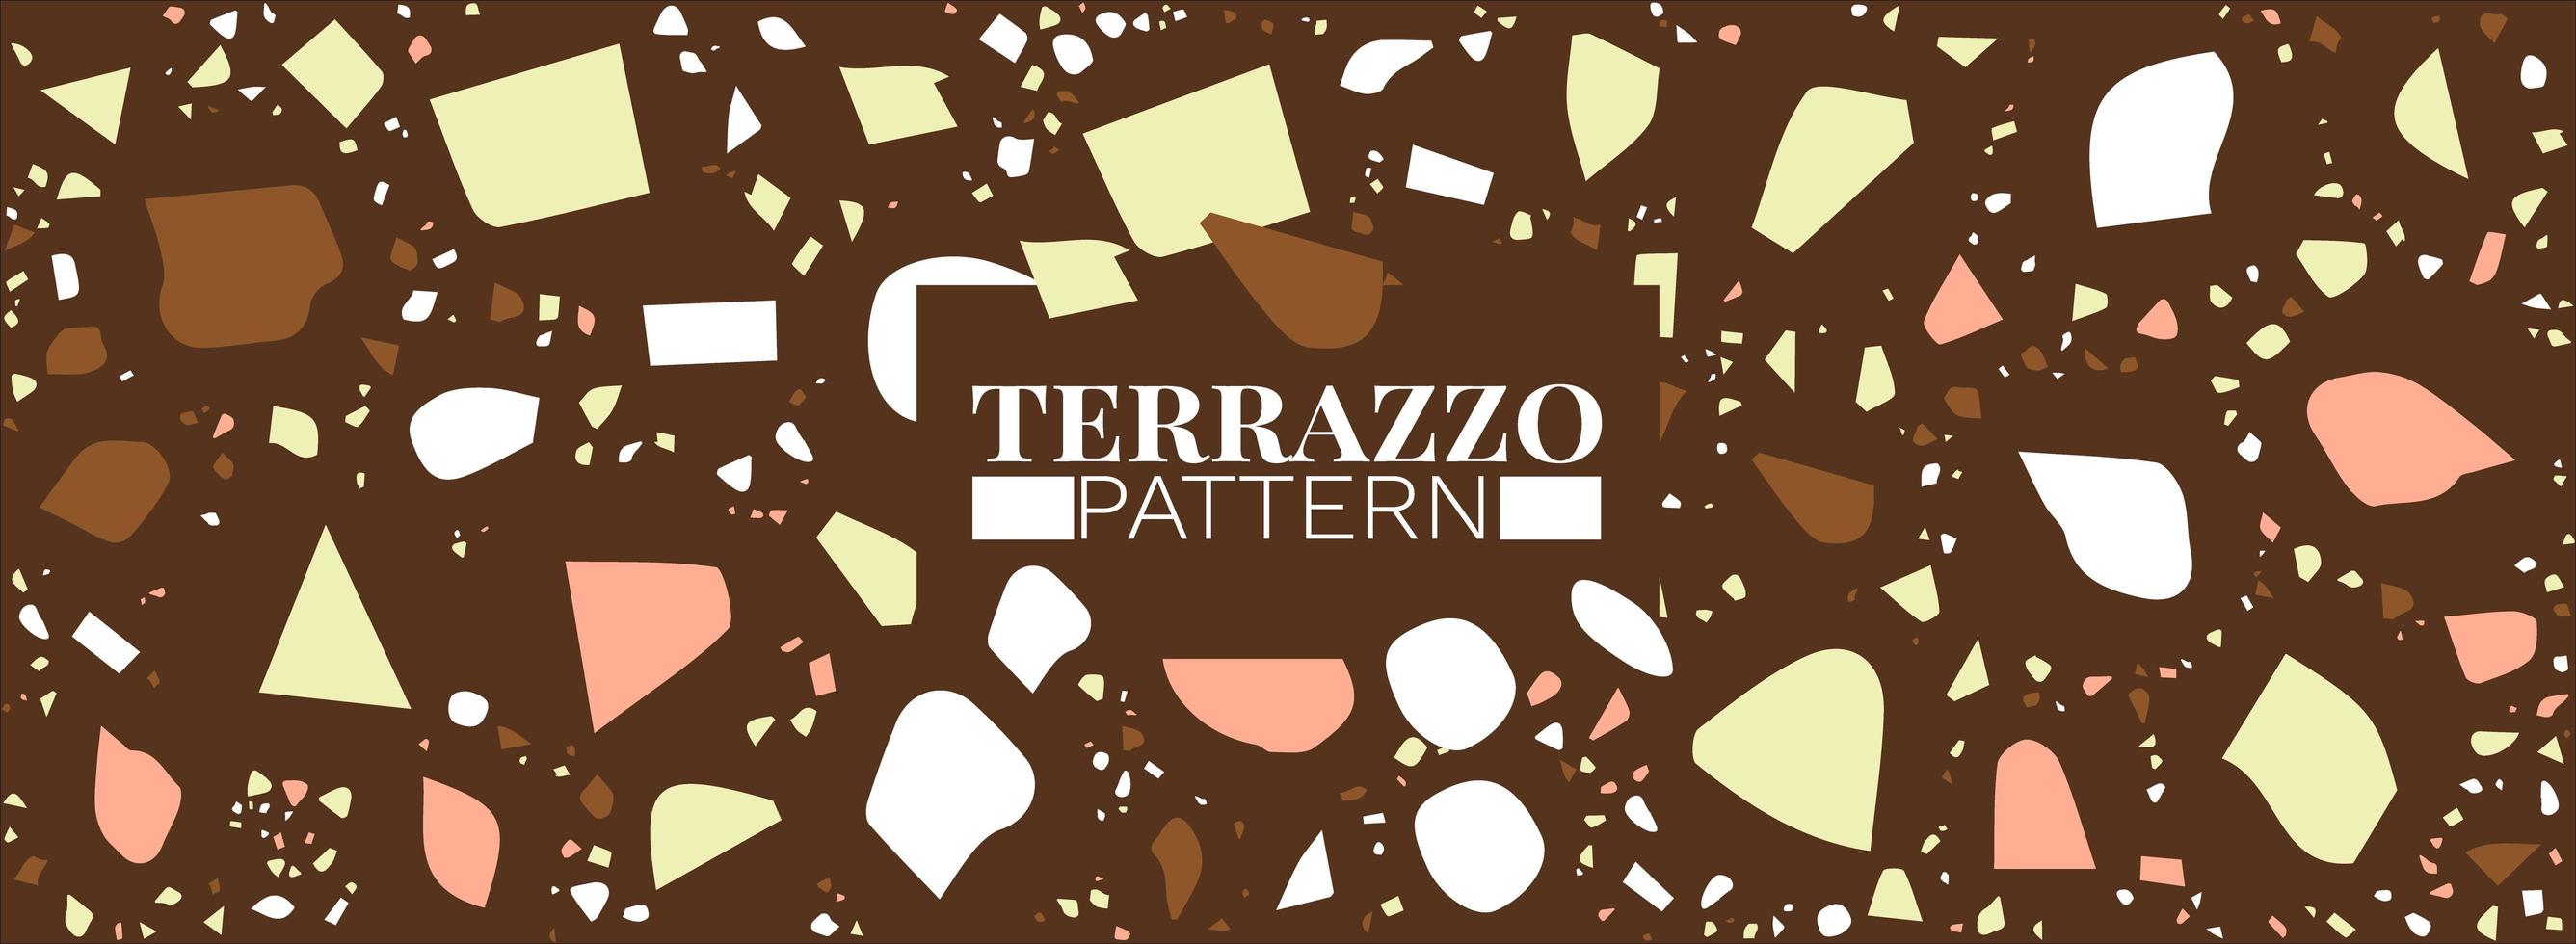 terrazzo achtergrond - terrazzo vloertegel patroon abstracte achtergrond gratis vector